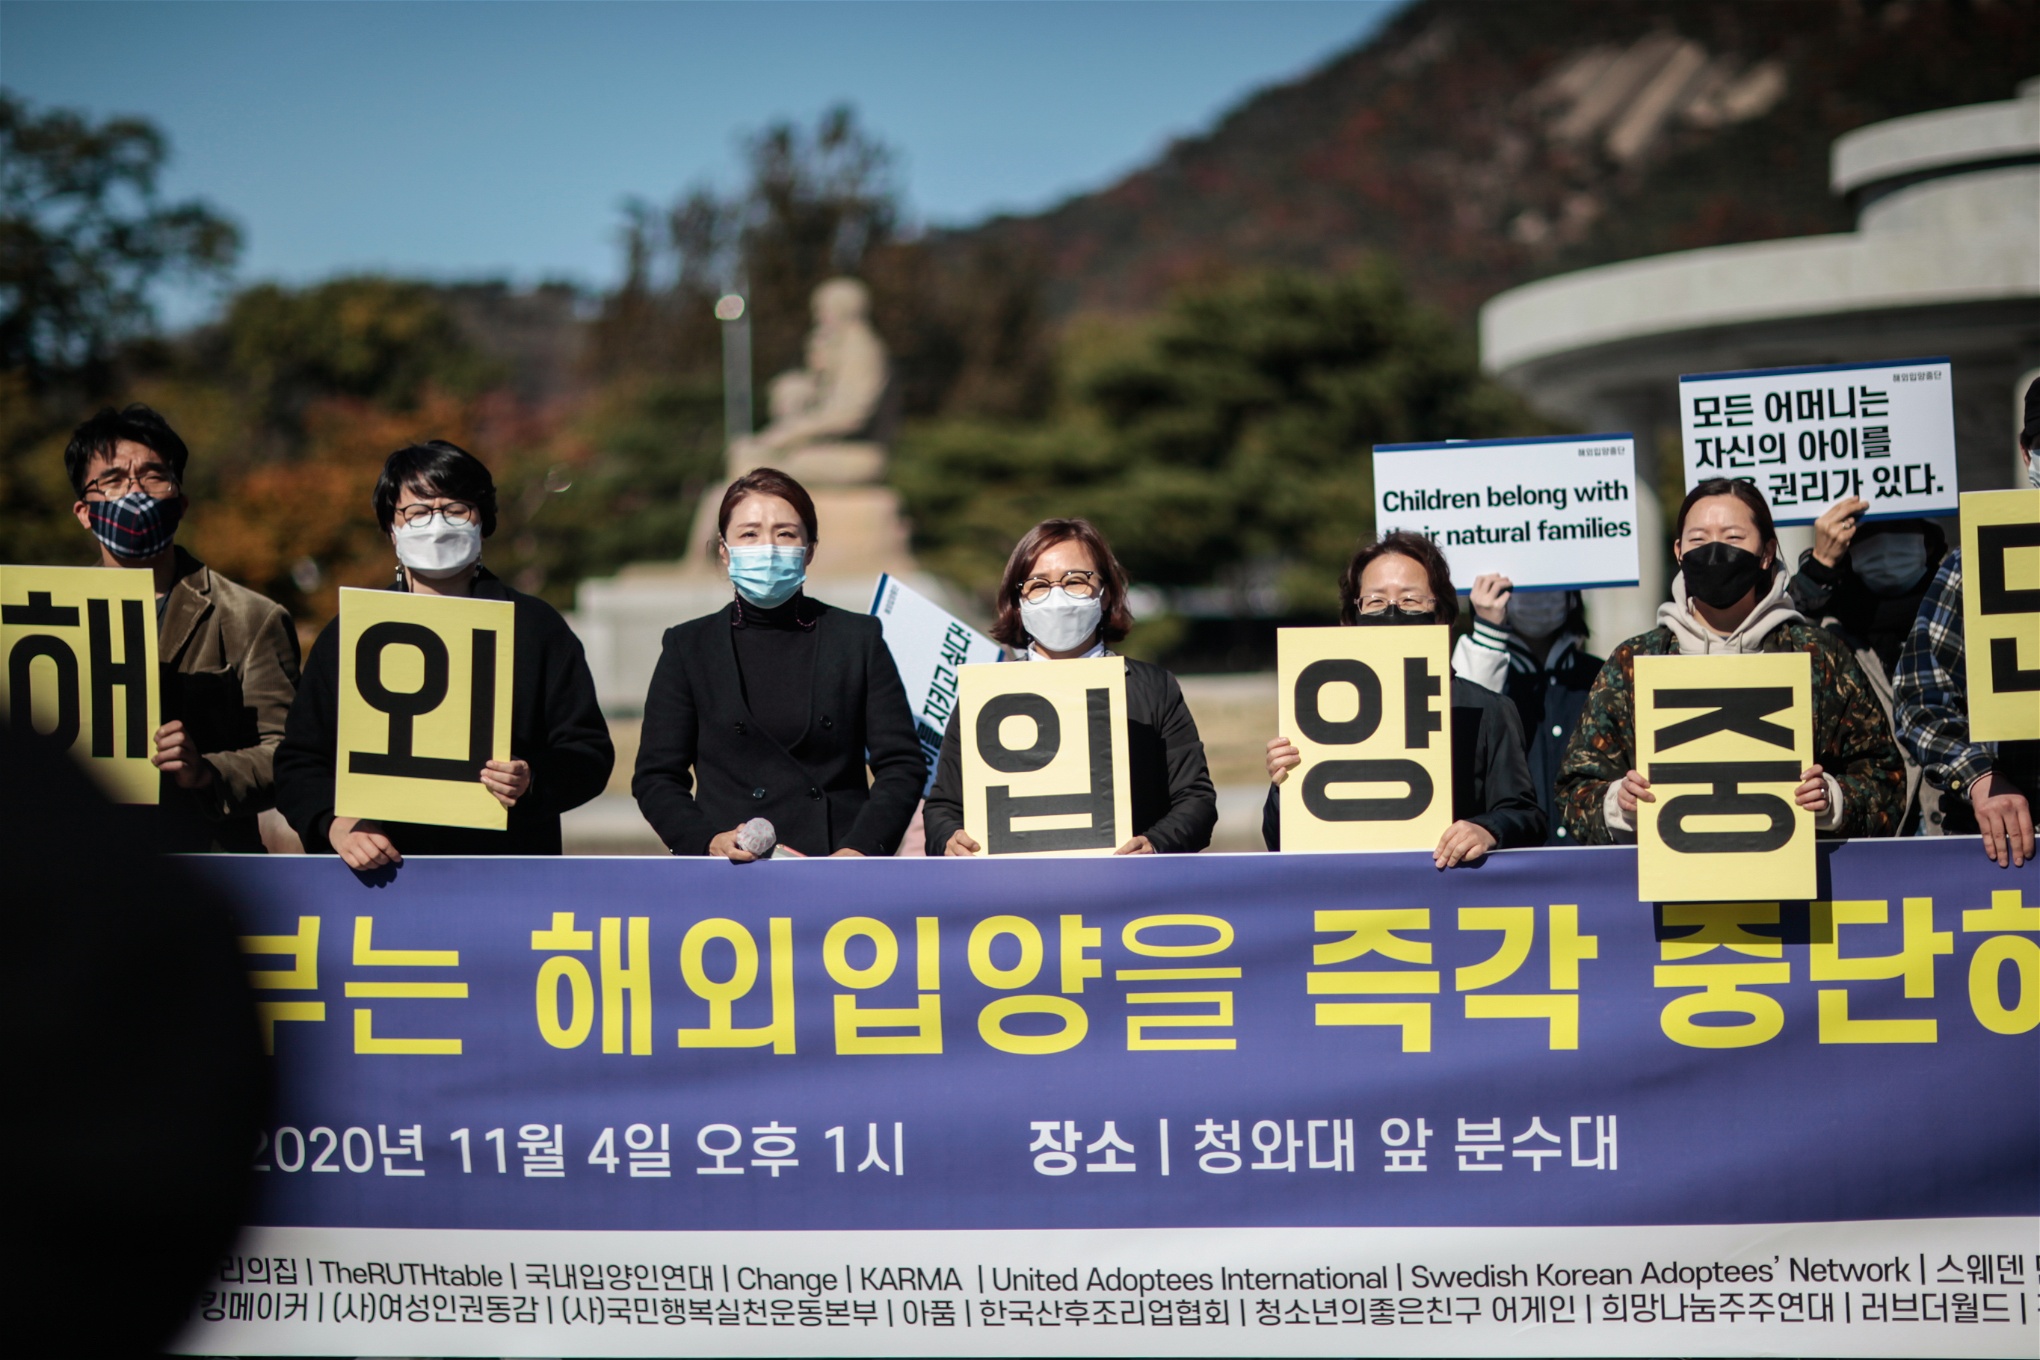 Ogifta mammor, adopterade och liberala organisationer kräver att den koreanska staten stoppar utlandsadoption. ”Alla mammor har rätt att ta hand om sina egna barn.”Foto: Simon Gate